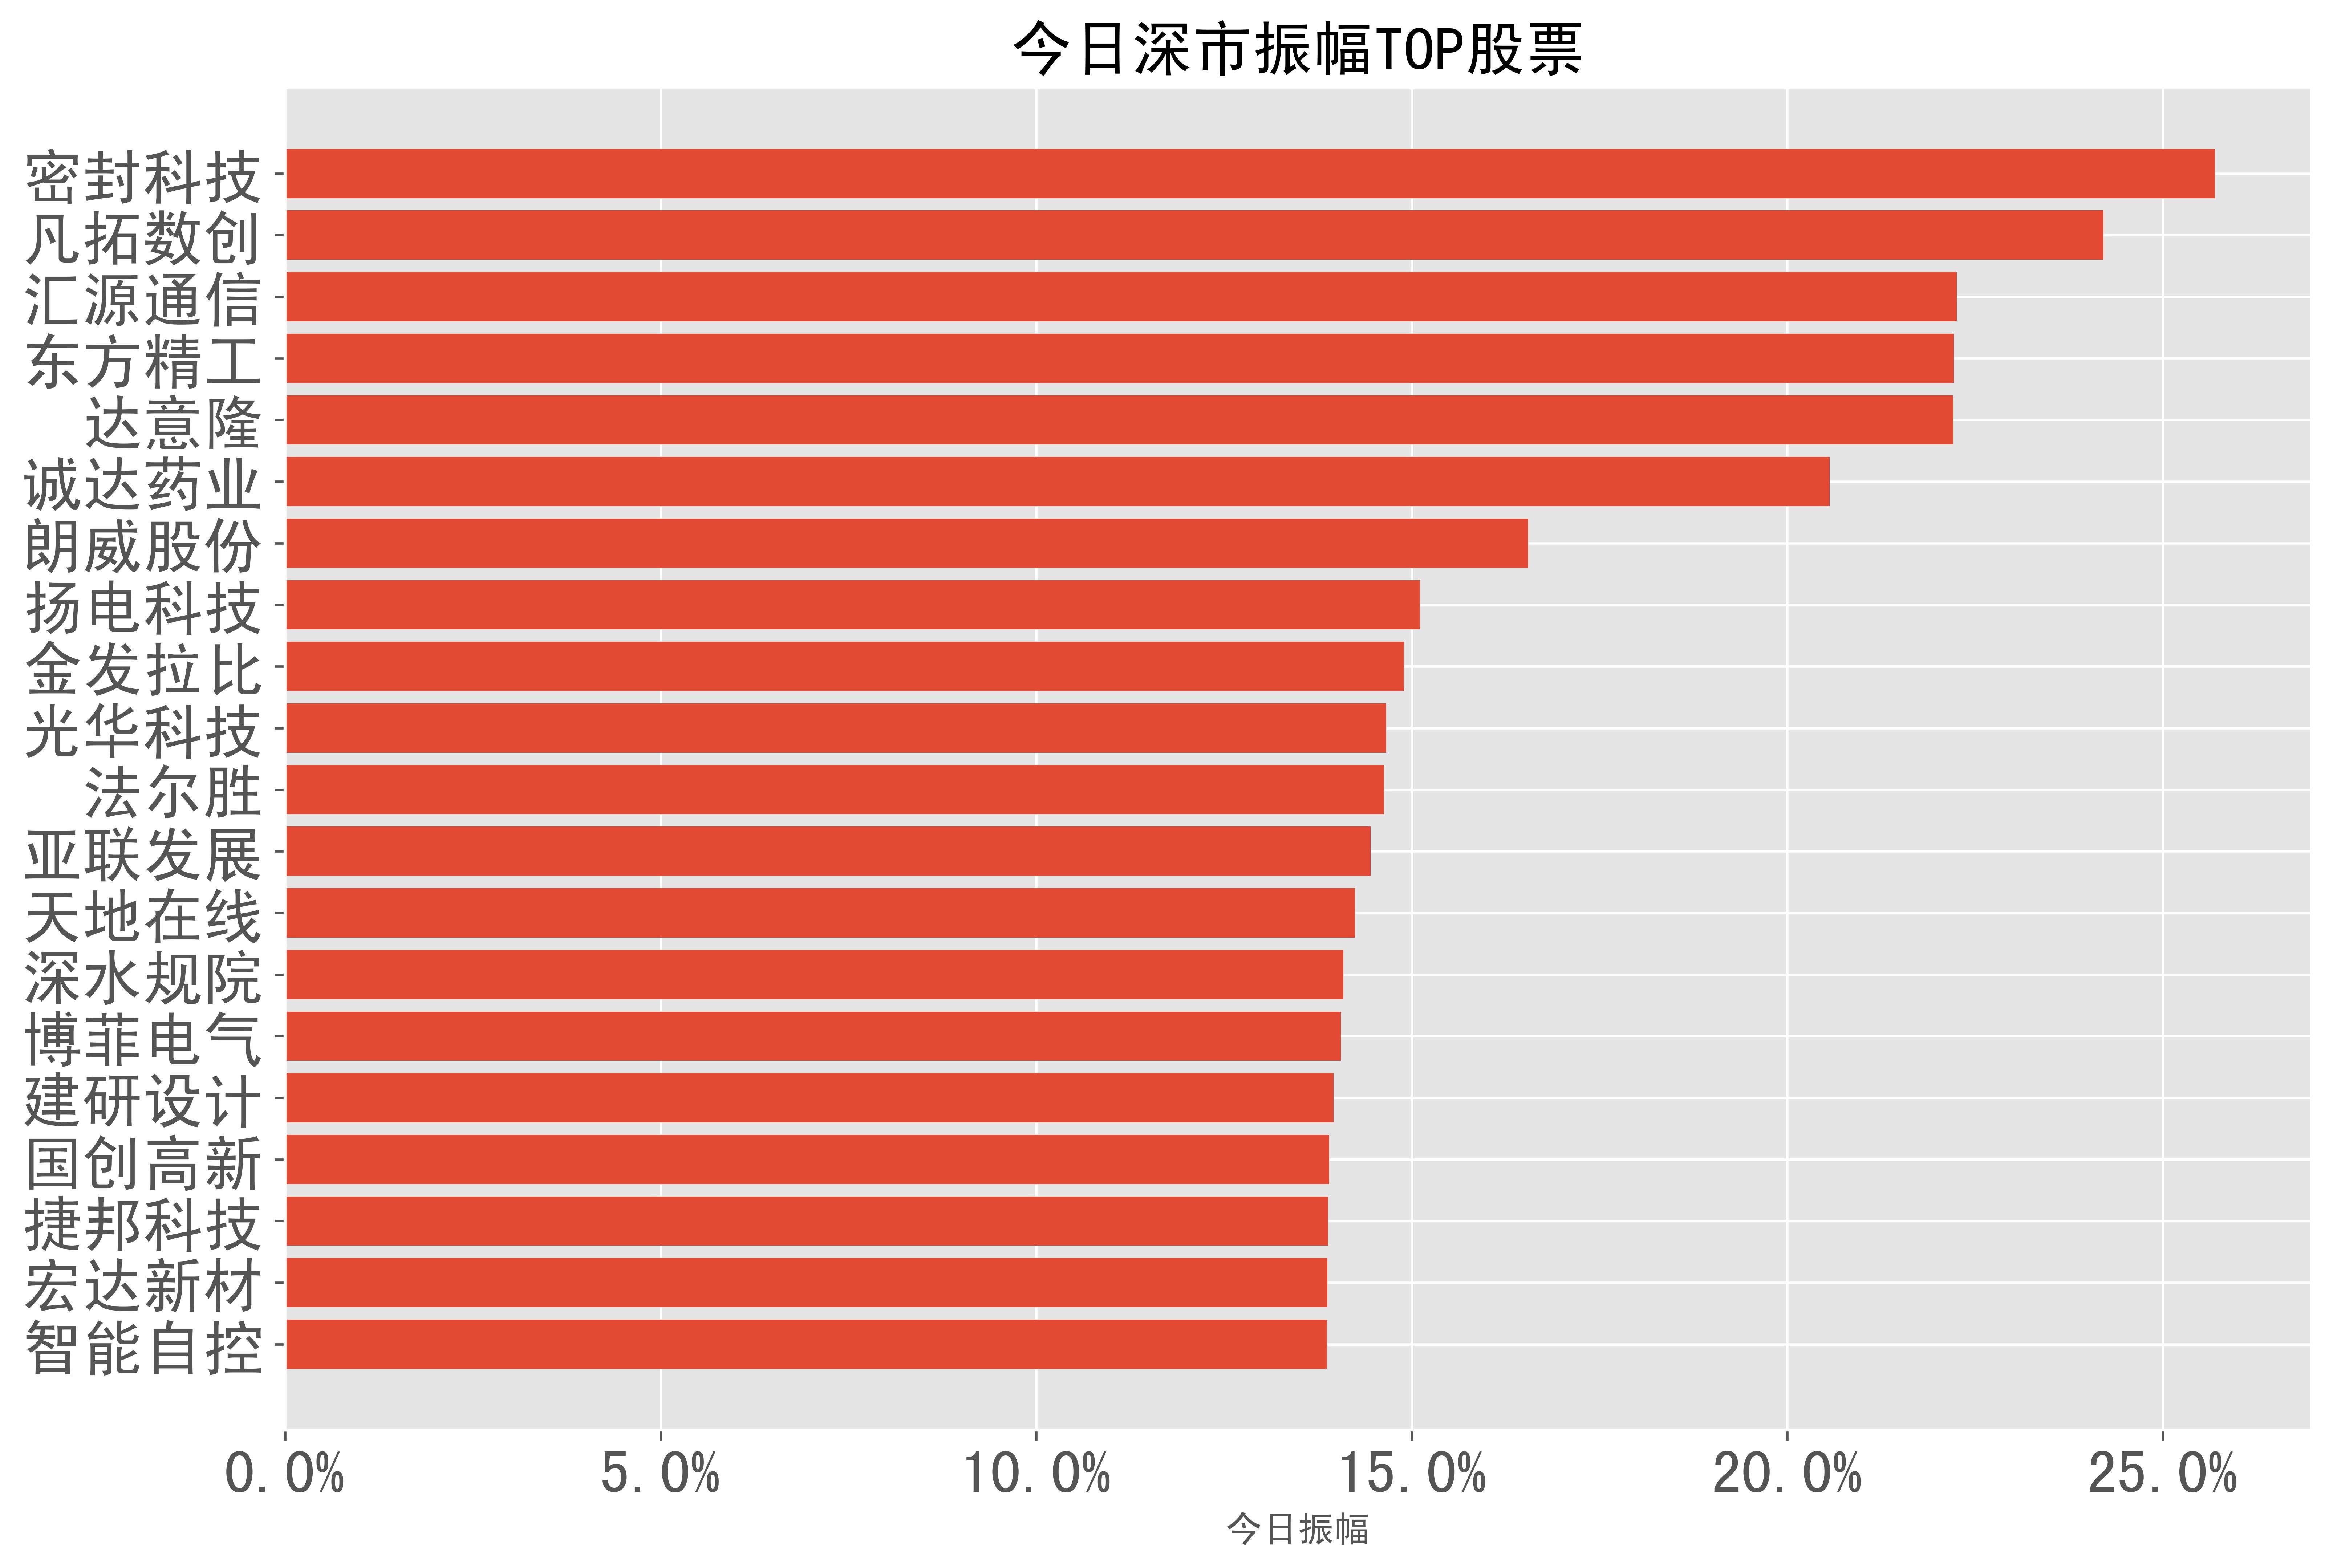 2%),汇源通信(223%),东方精工(222%),达意隆(222%),诚达药业(20